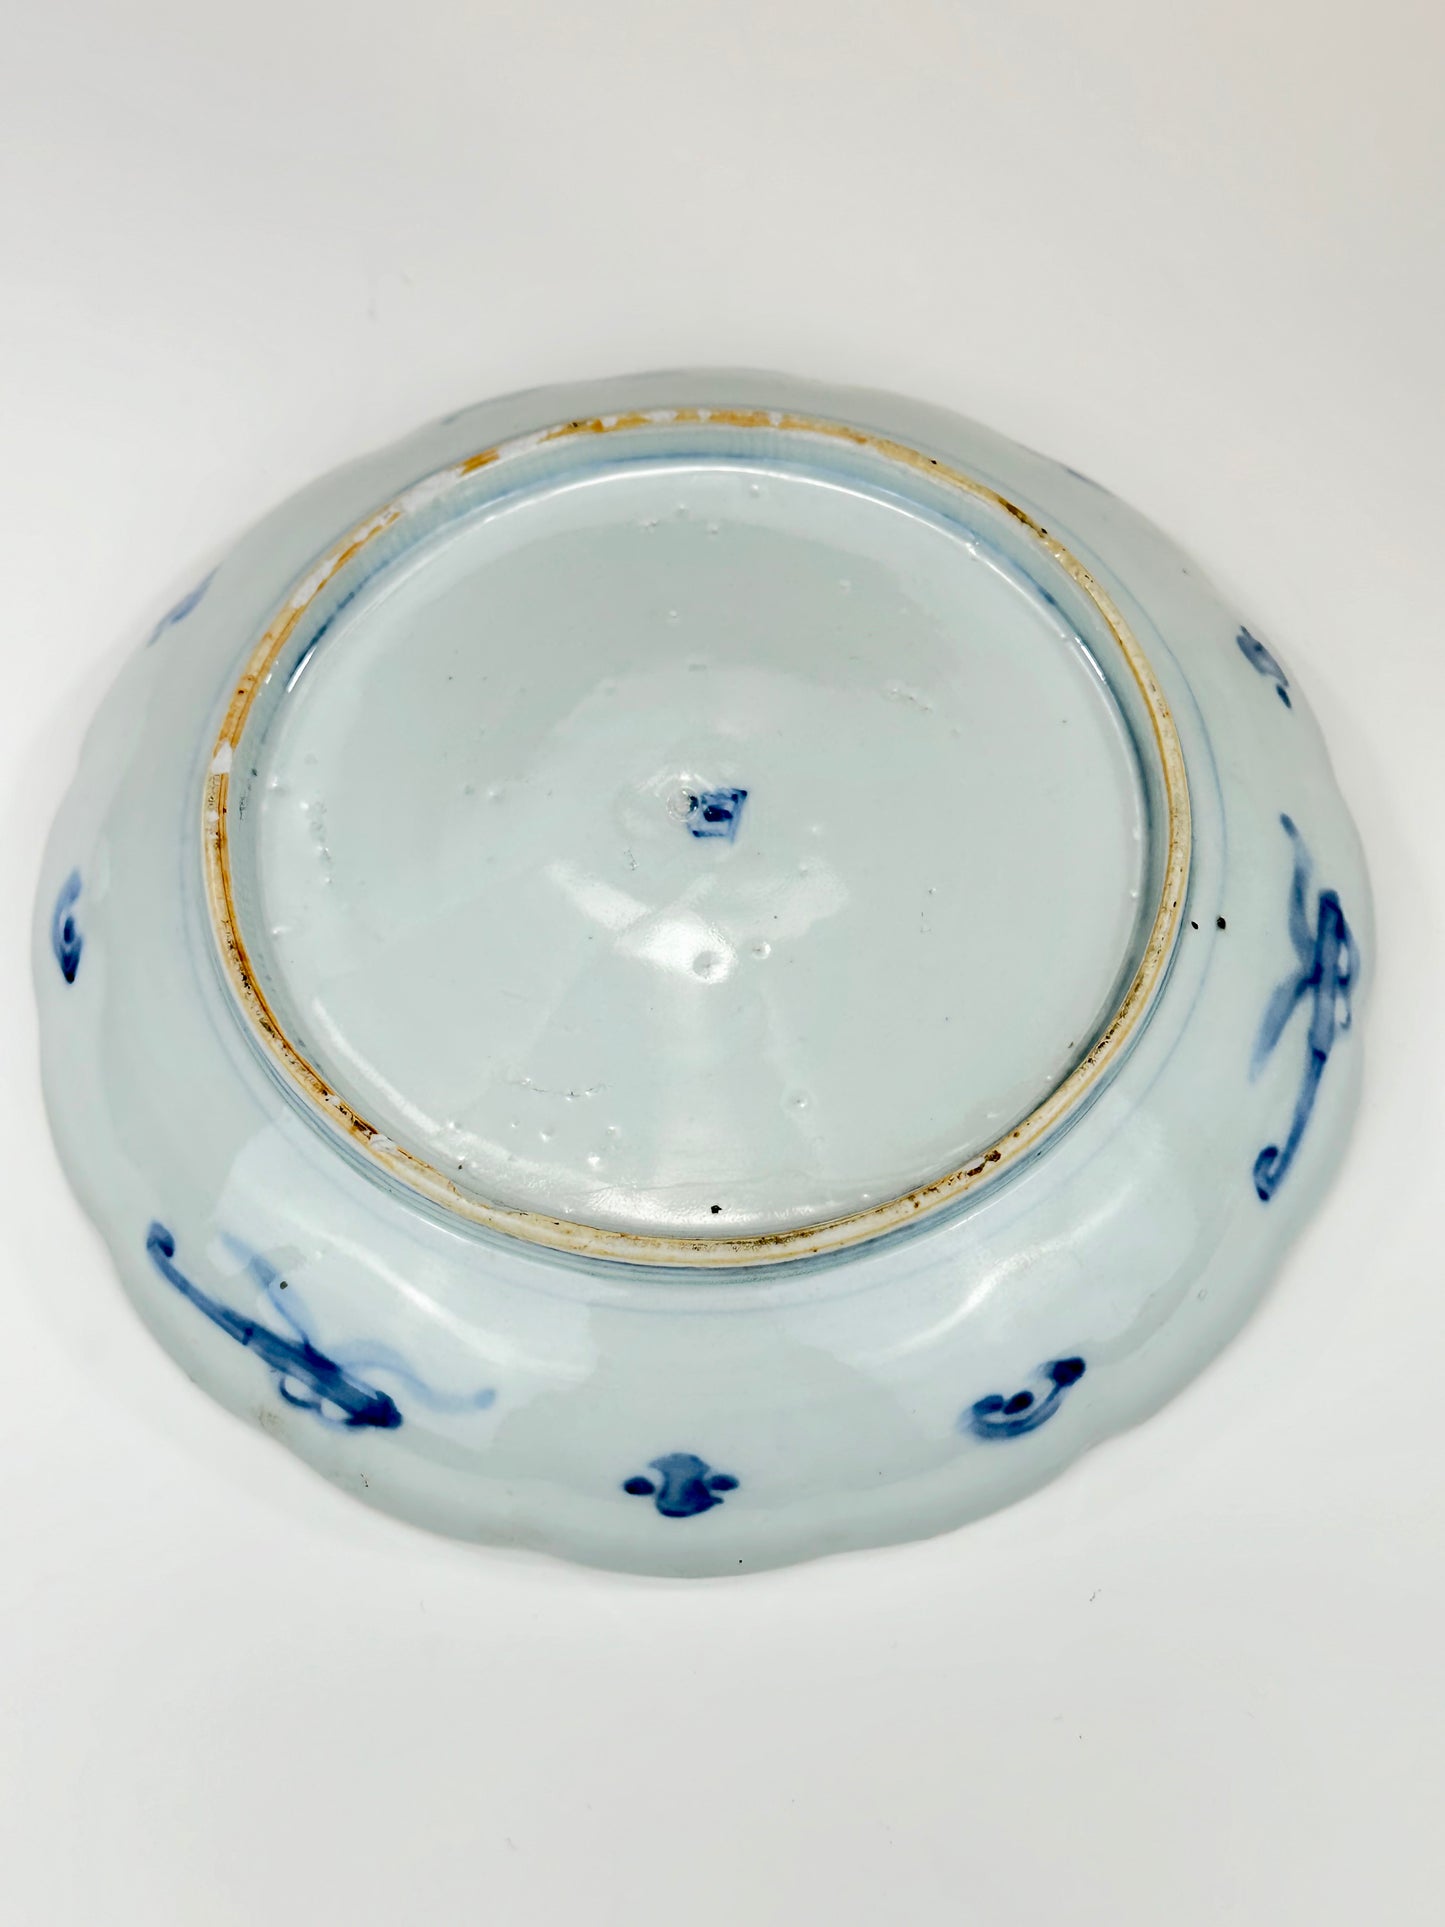 Antique Japanese Edo Era 19th Century Imari Ceramic Plate 9.5"